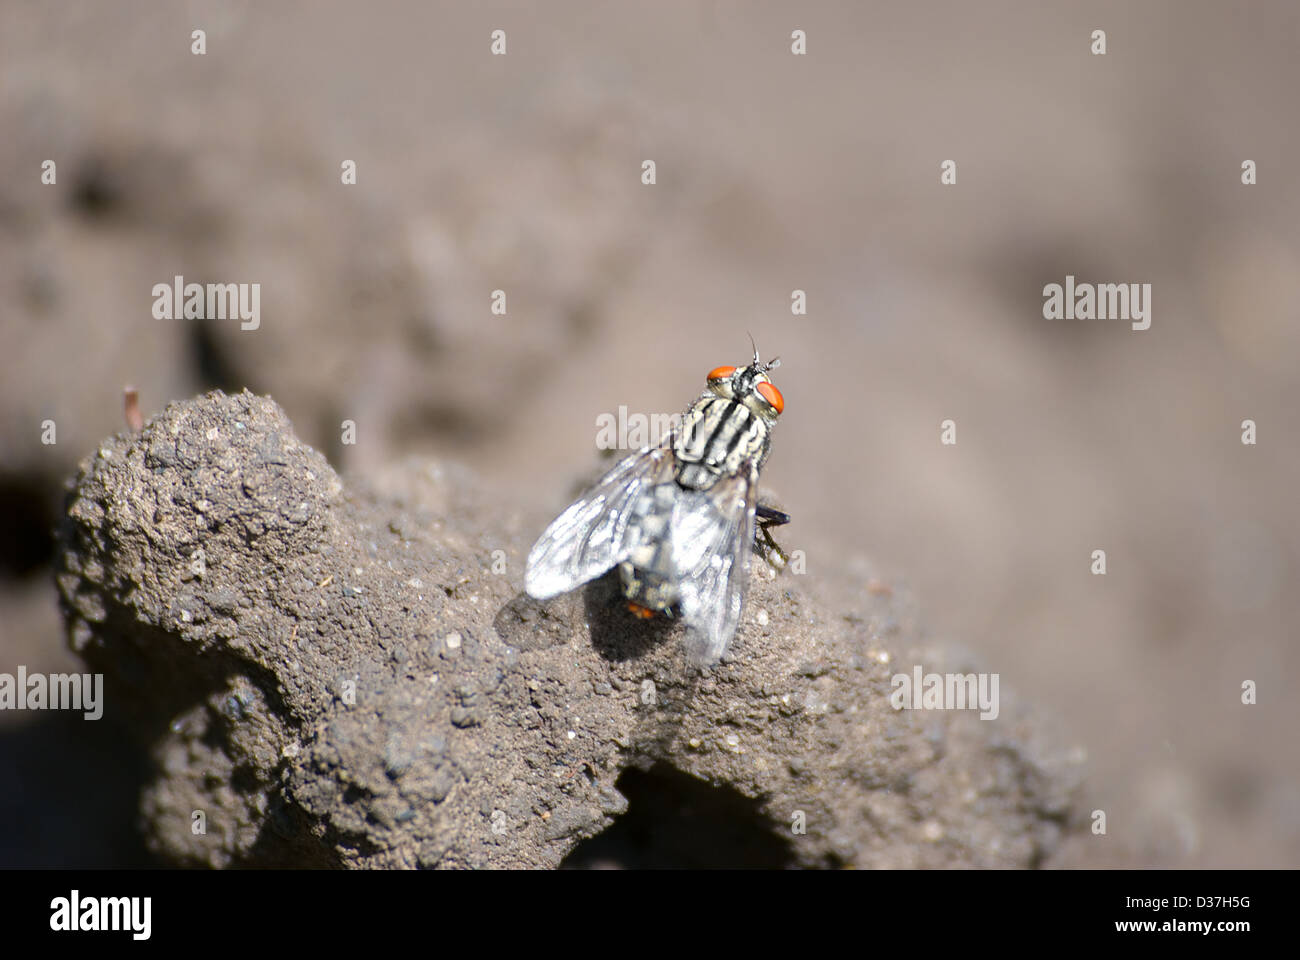 Die Fliege sitzt auf Scholle die Erden Stockfoto